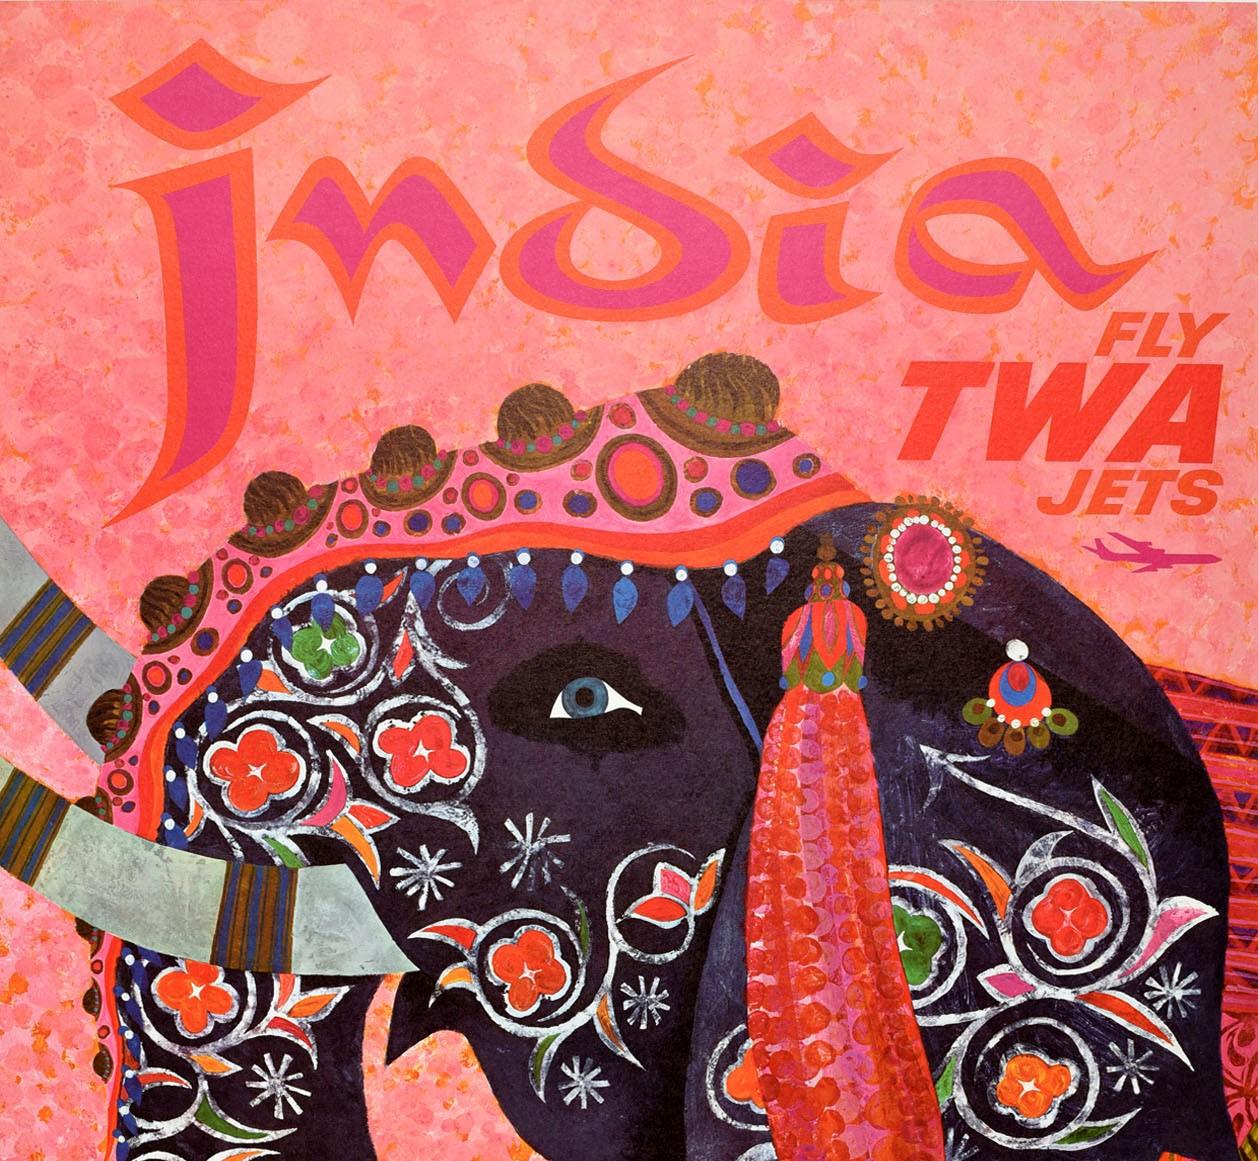 Affiche de voyage vintage originale pour l'Inde Fly TWA Jets Up Up and Away présentant un dessin coloré de l'artiste américain David Klein (1918-2005) représentant un éléphant indien décoratif aux yeux souriants devant un fond rose ombré, une image